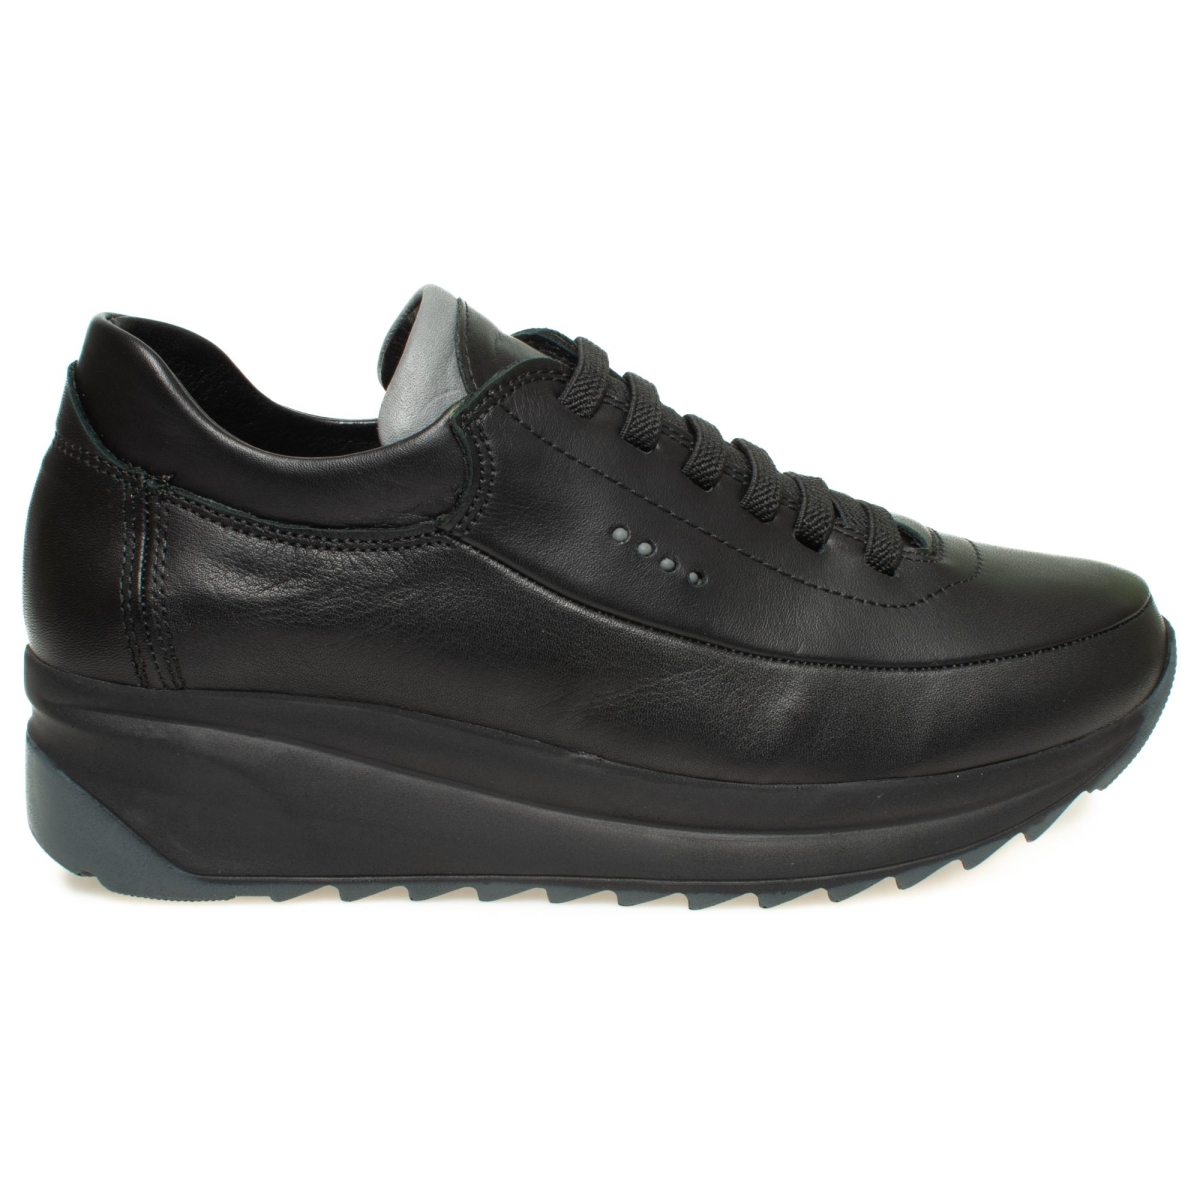 D24Ya-3005Z Dolgu Topuk Siyah Kadın Ayakkabı